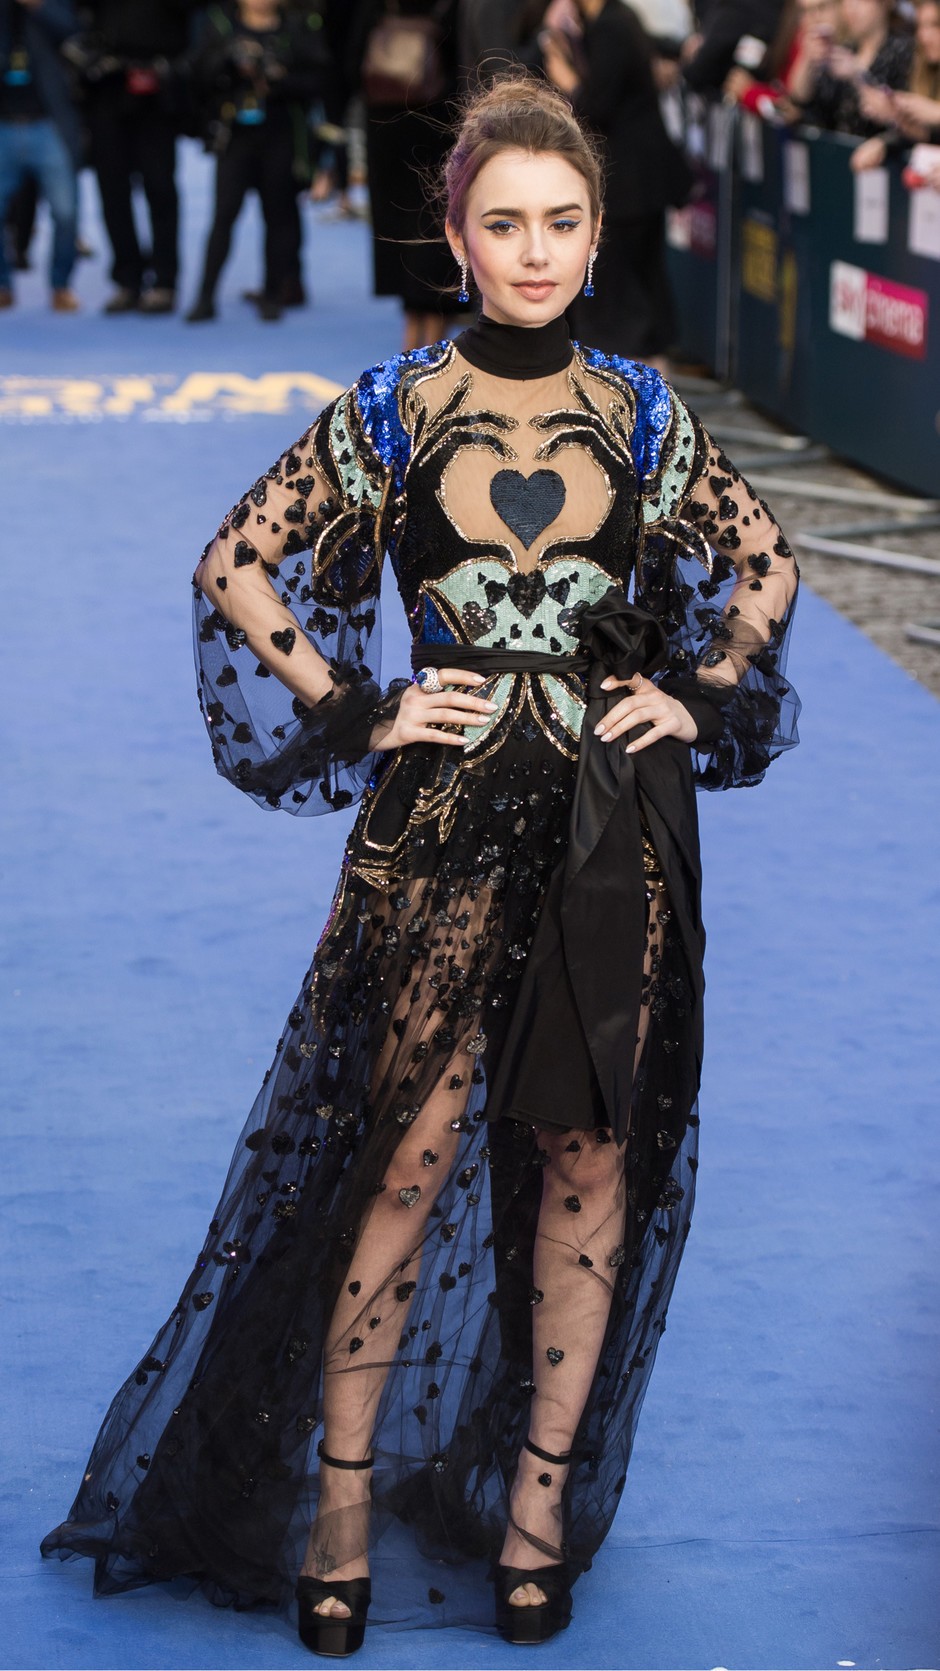 Лили Коллинз на премьере в платье Ellie Saab, сапфирах и бриллиантах